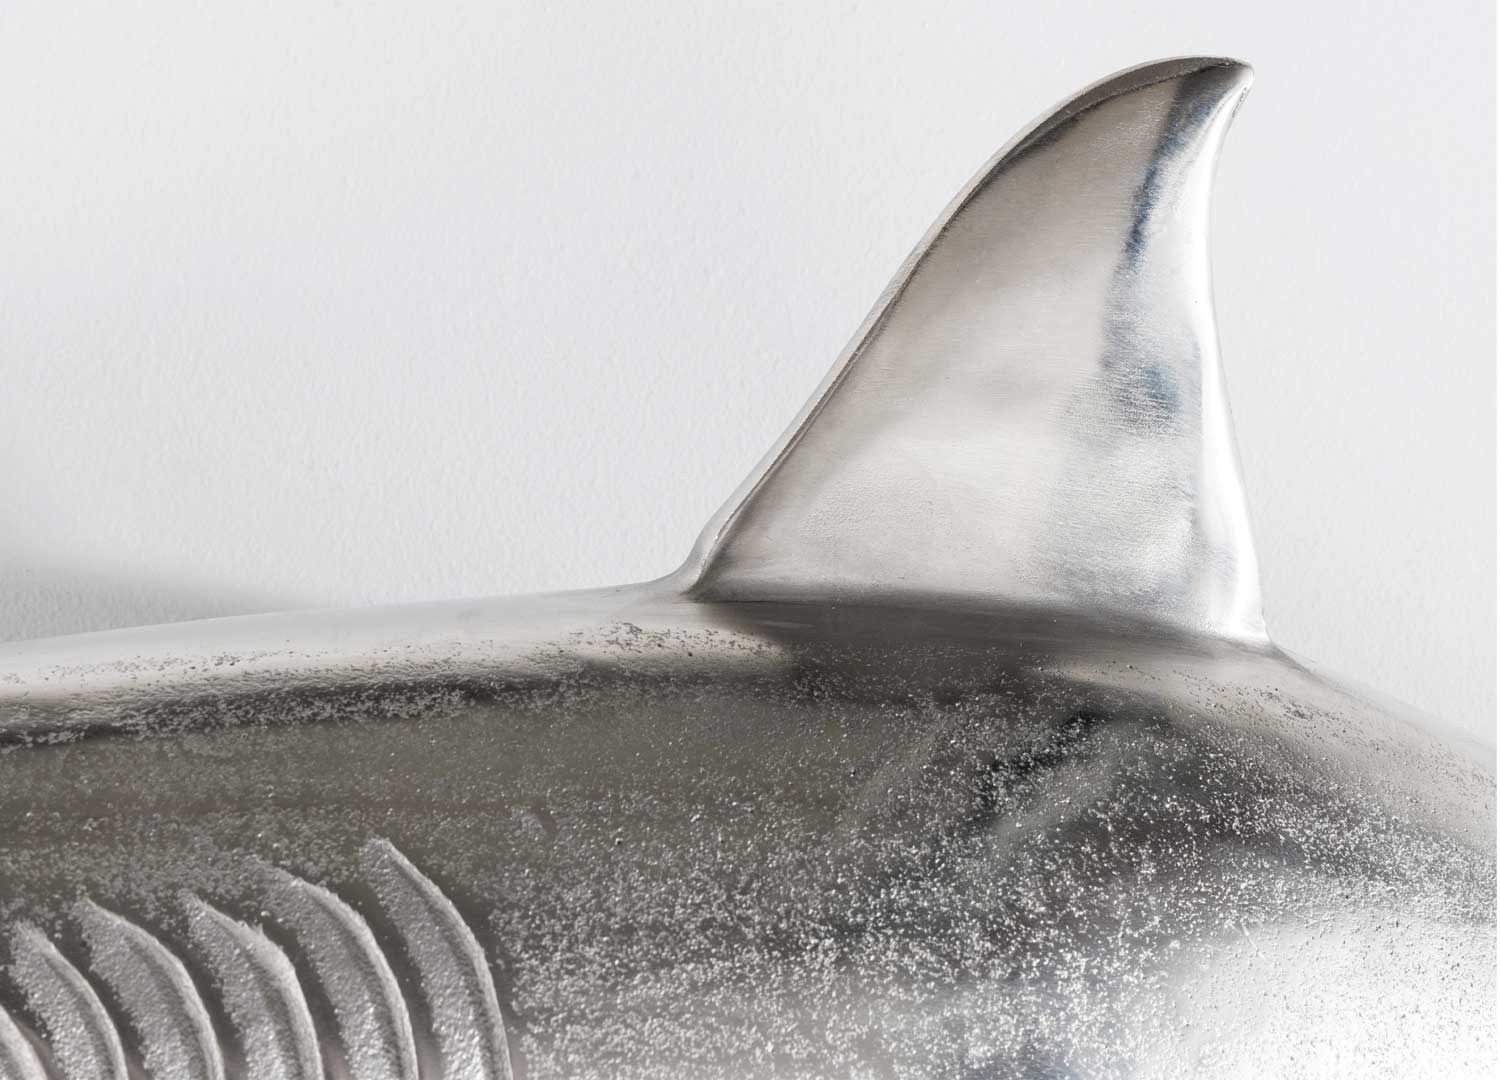 Aileron du requin mural argenté